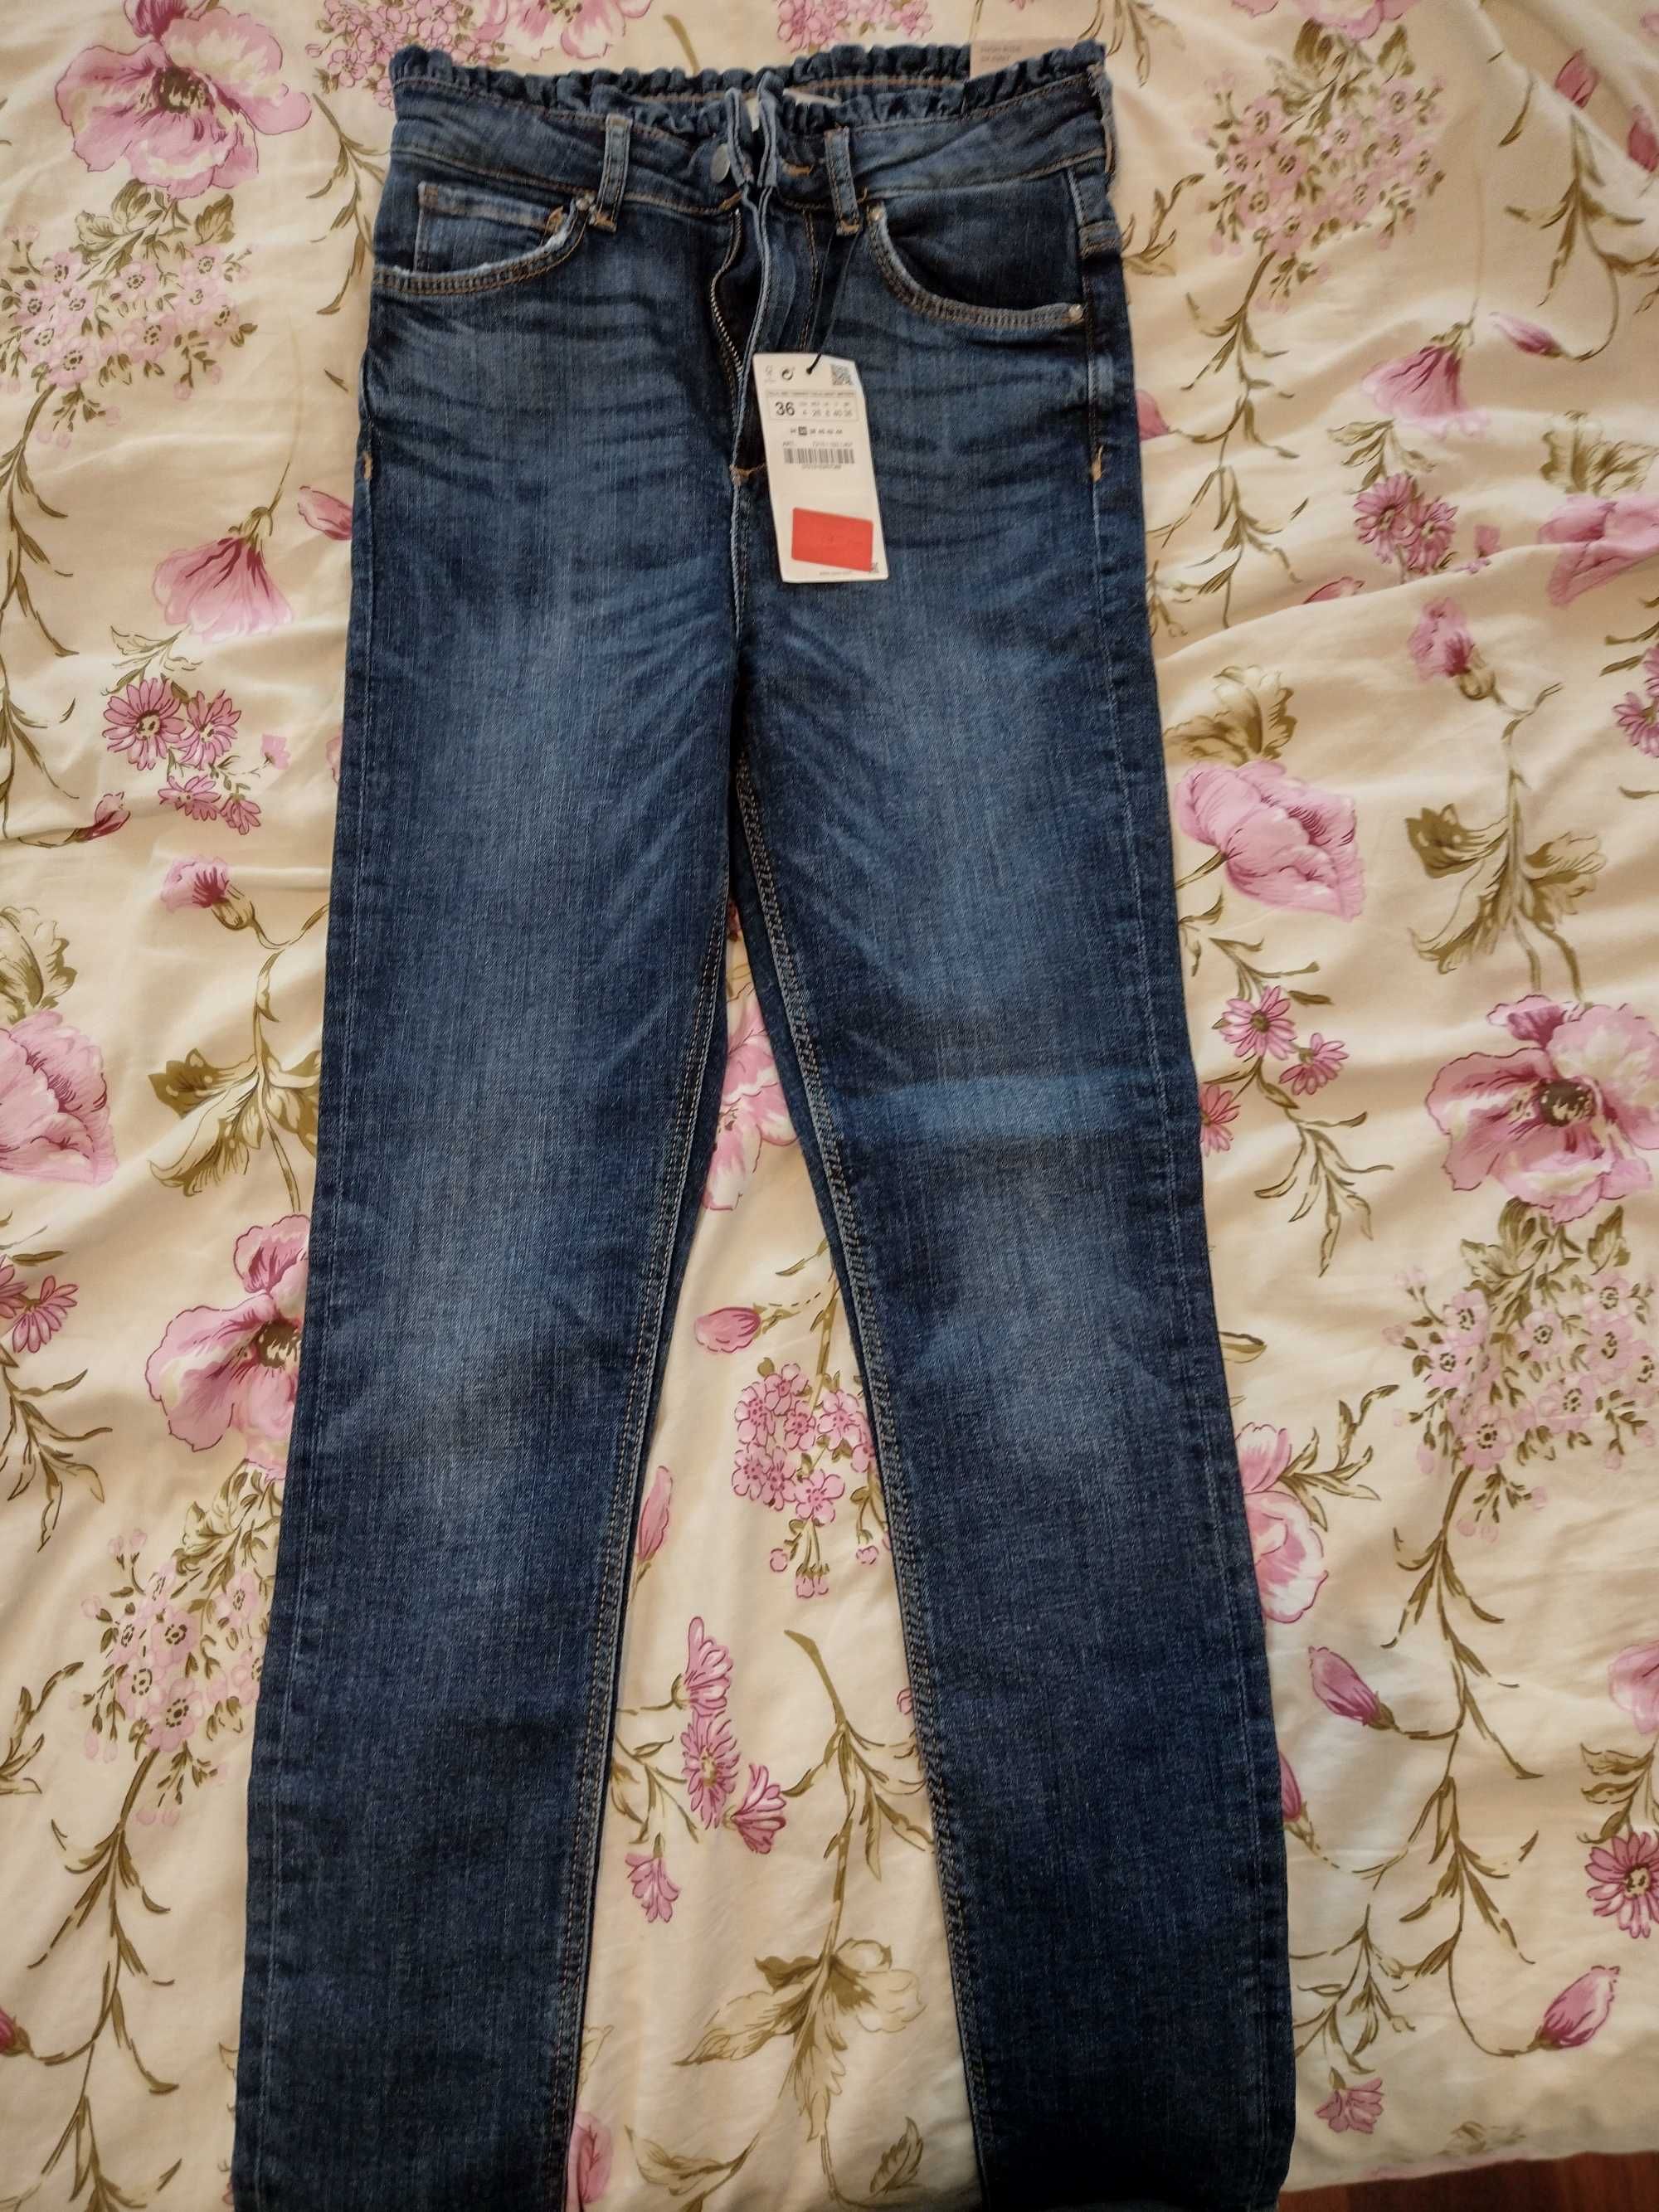 Spodnie damskie jeans ZARA. Rozmiar 36. NOWE